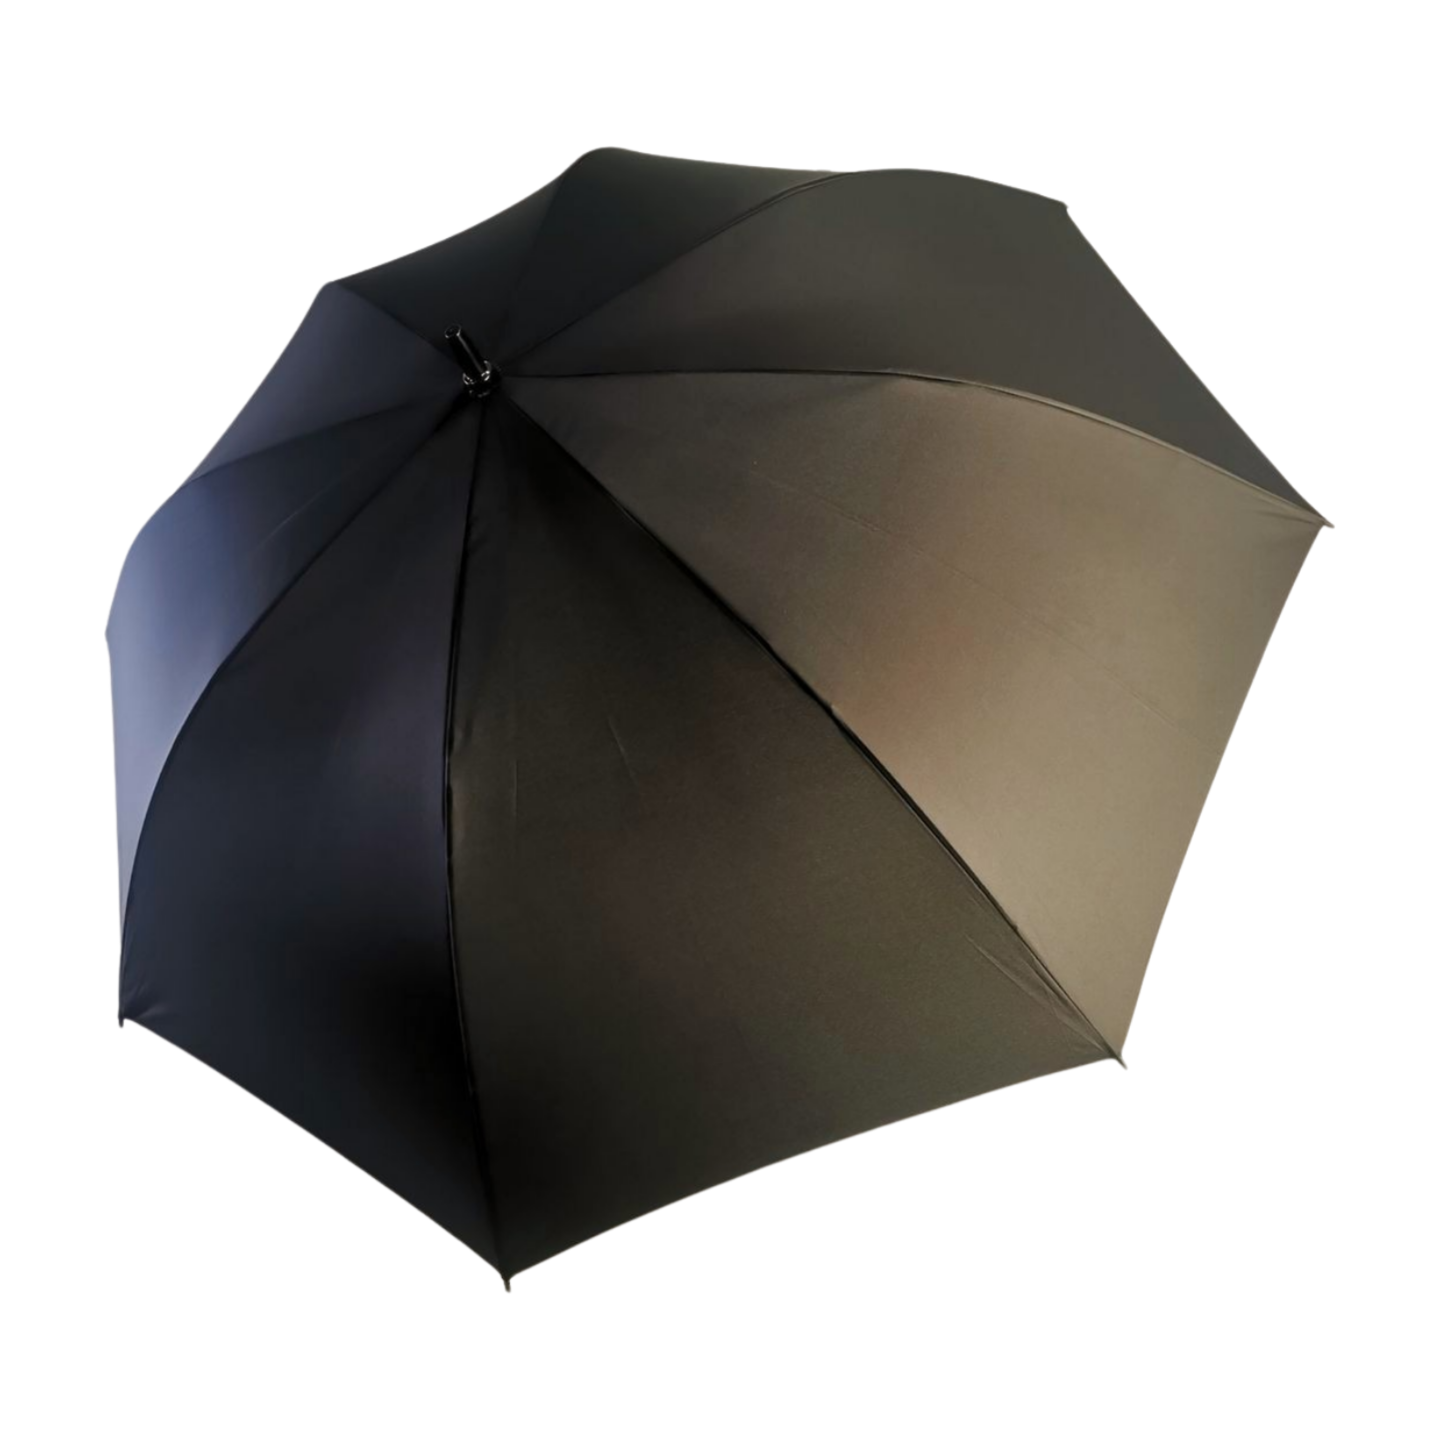 https://www.hodaumbrella.com/60-ombrello-da-golf…prodotto-stile-business/